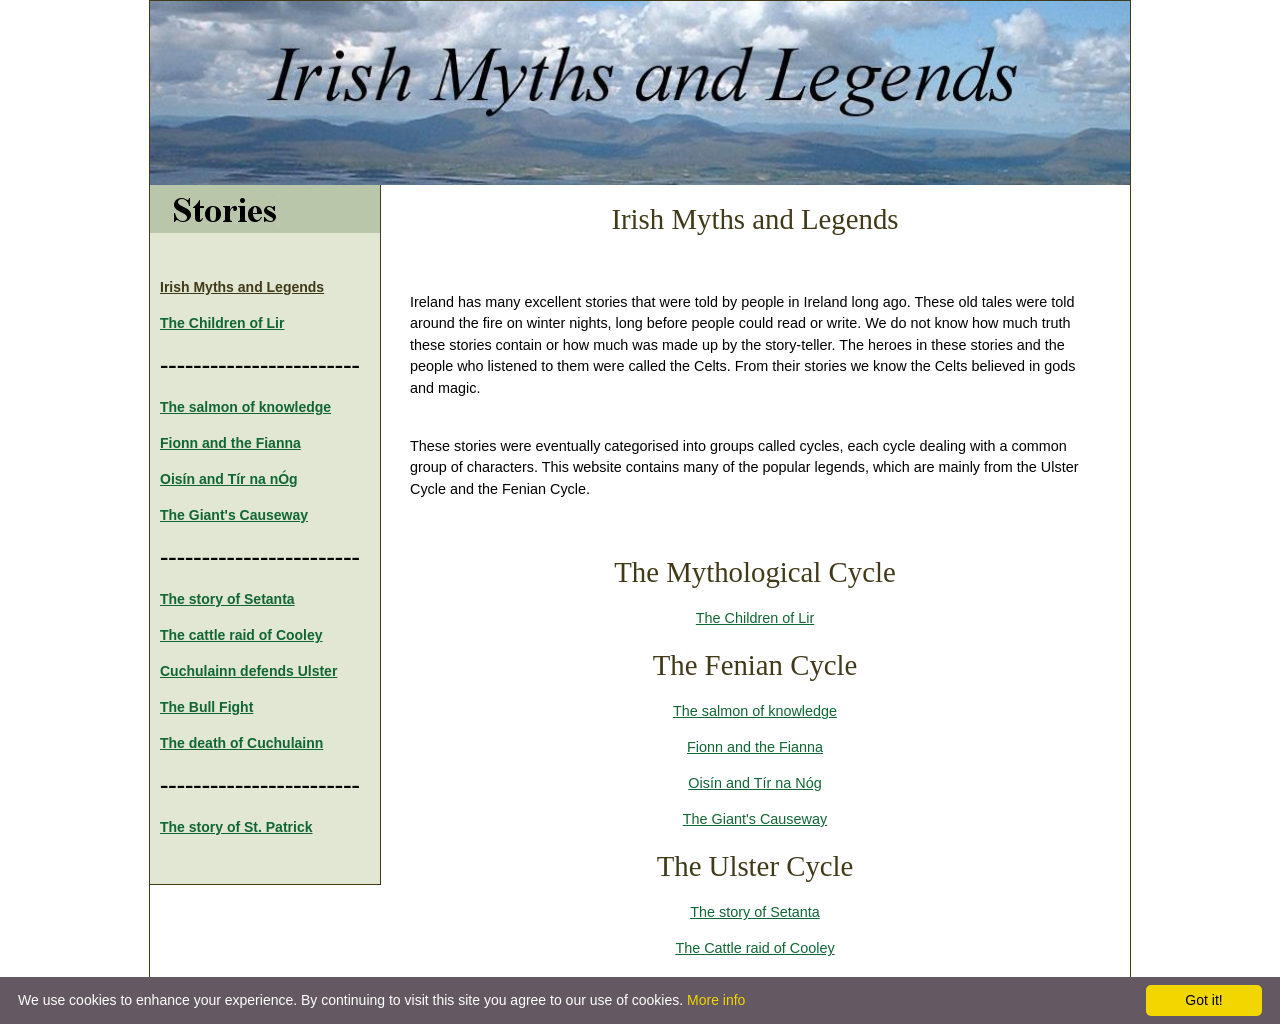 Irish Mythology 